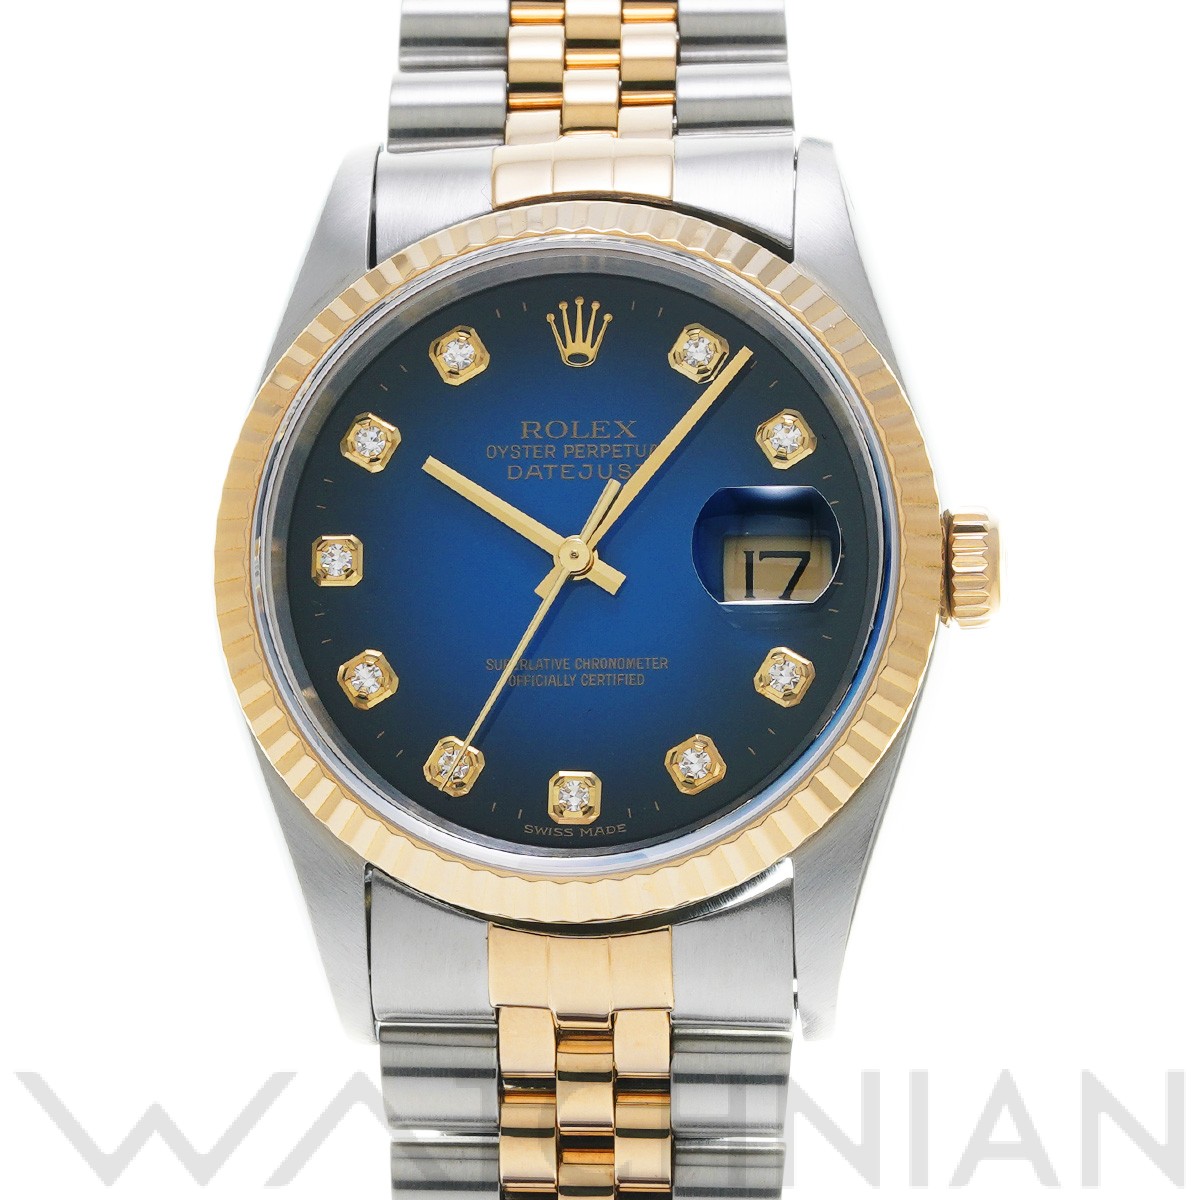  ロレックス ROLEX デイトジャスト  16233G W番(1996年頃製造) ブルー・グラデーション ダイヤモンド メンズ 腕時計